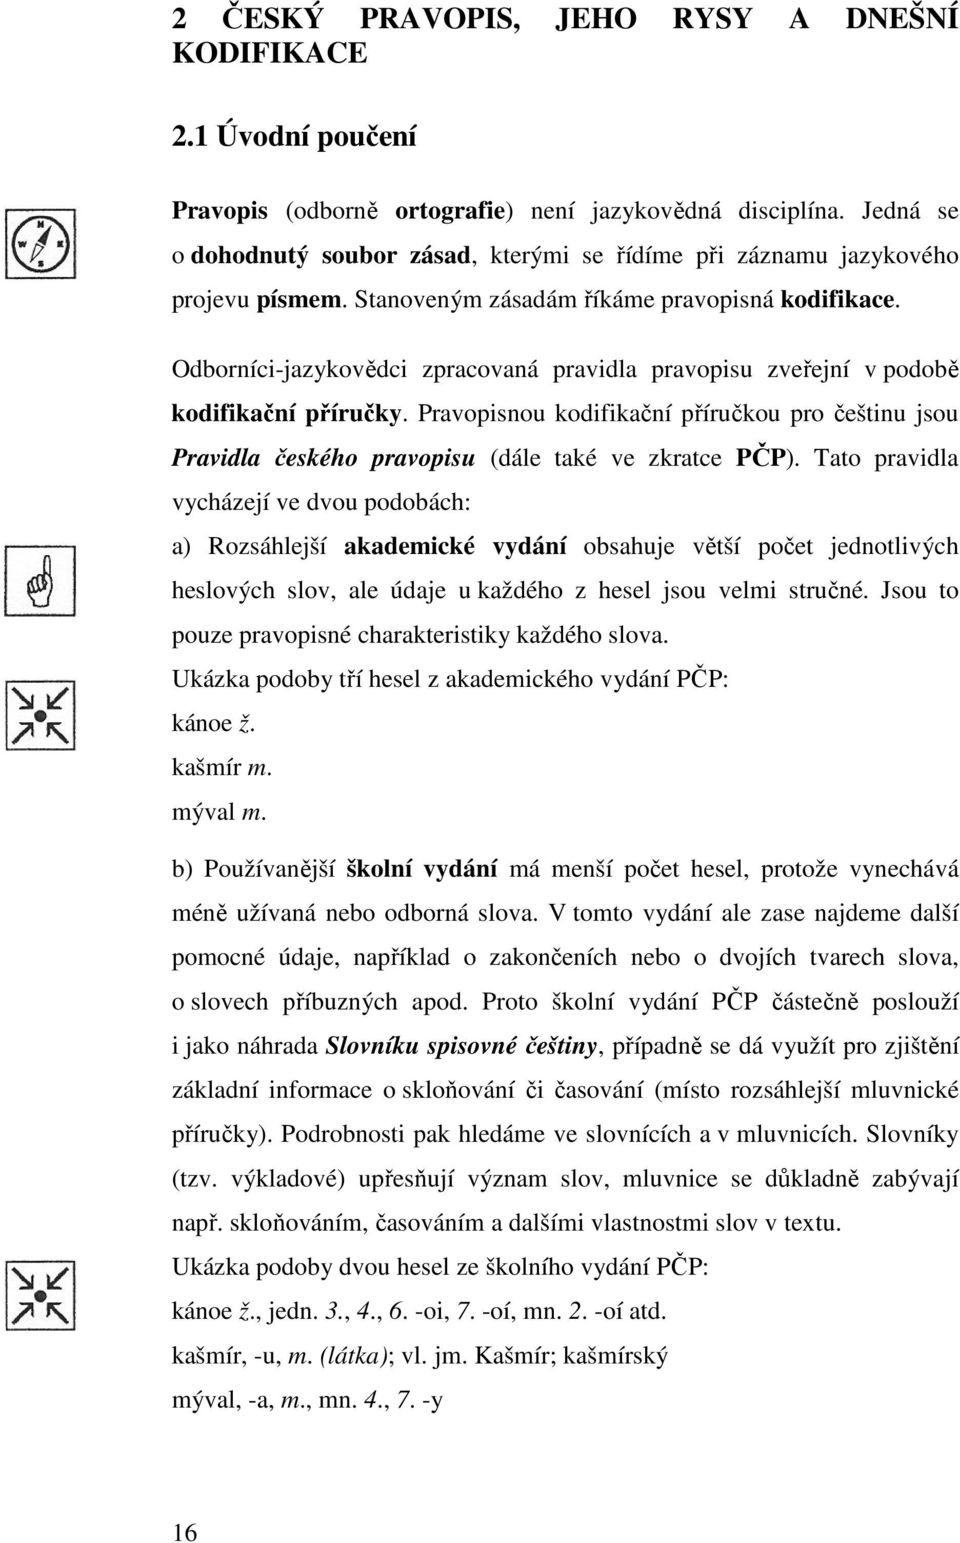 Odborníci-jazykovědci zpracovaná pravidla pravopisu zveřejní v podobě kodifikační příručky. Pravopisnou kodifikační příručkou pro češtinu jsou Pravidla českého pravopisu (dále také ve zkratce PČP).